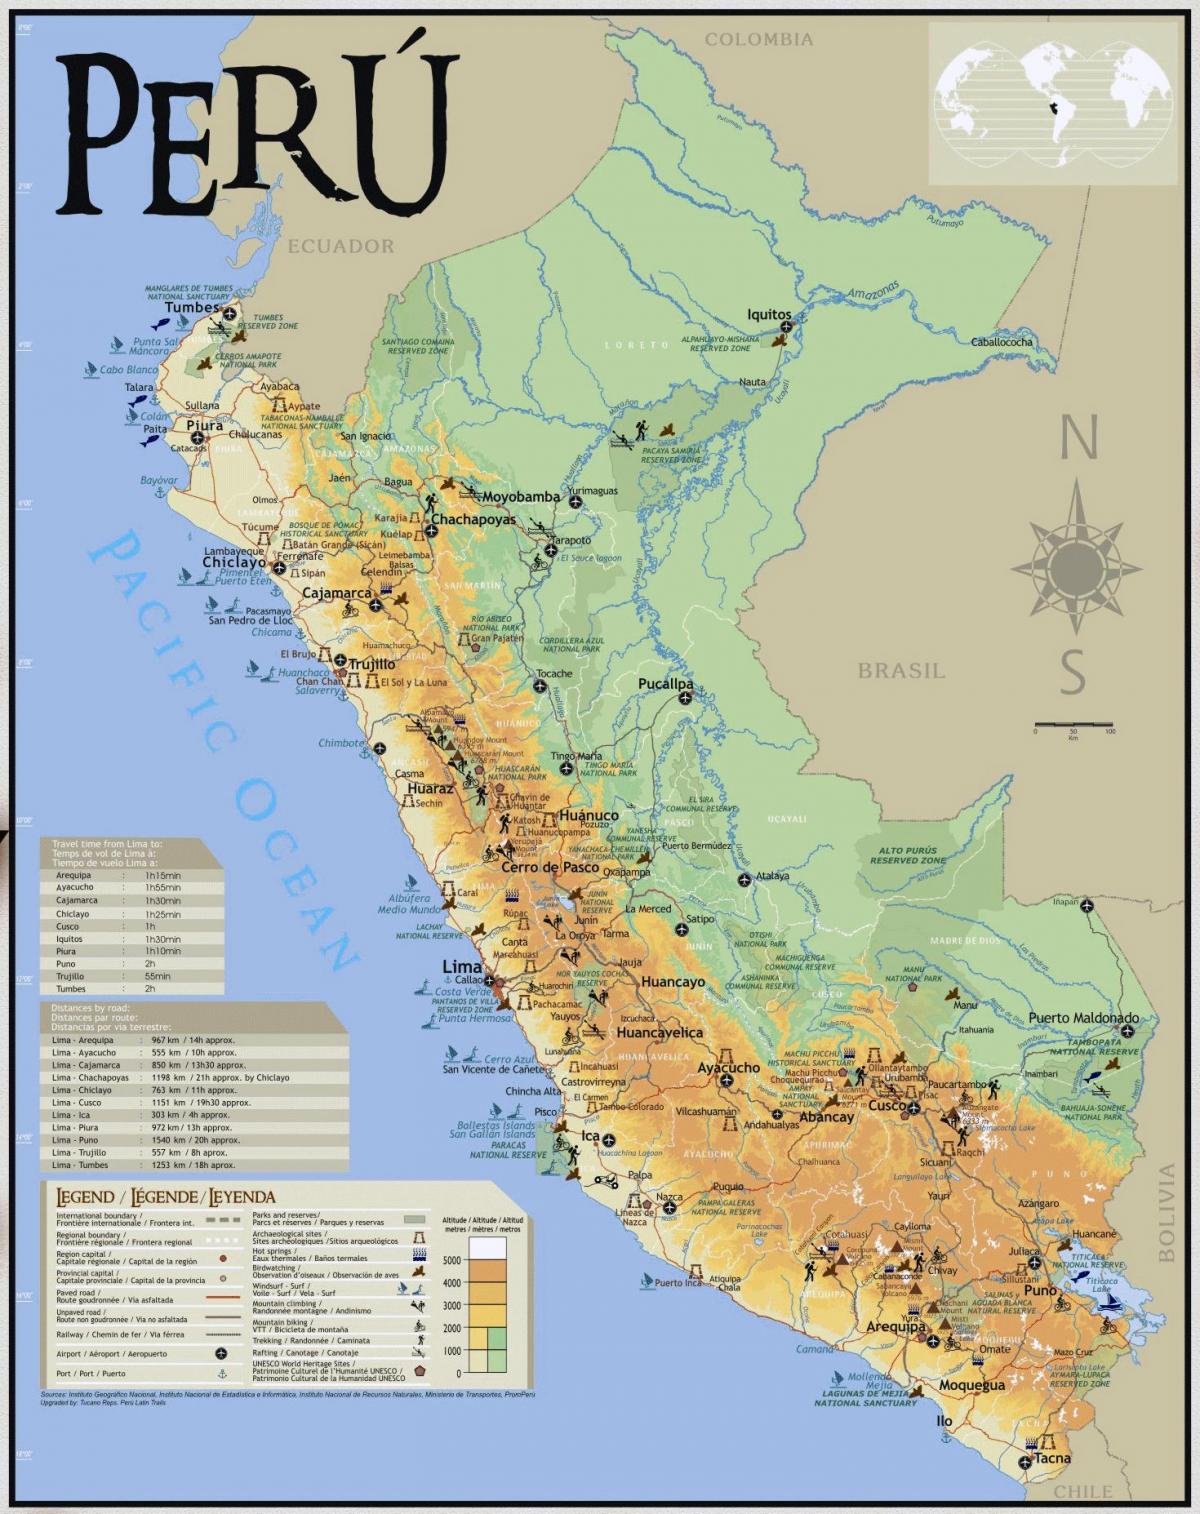 Peruu turističke atrakcije mapu